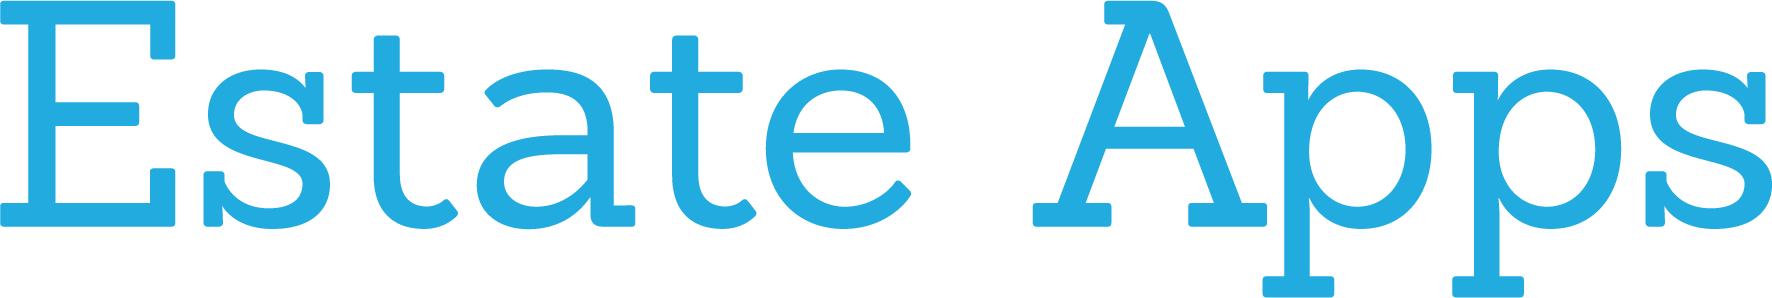 Estate Apps Logo